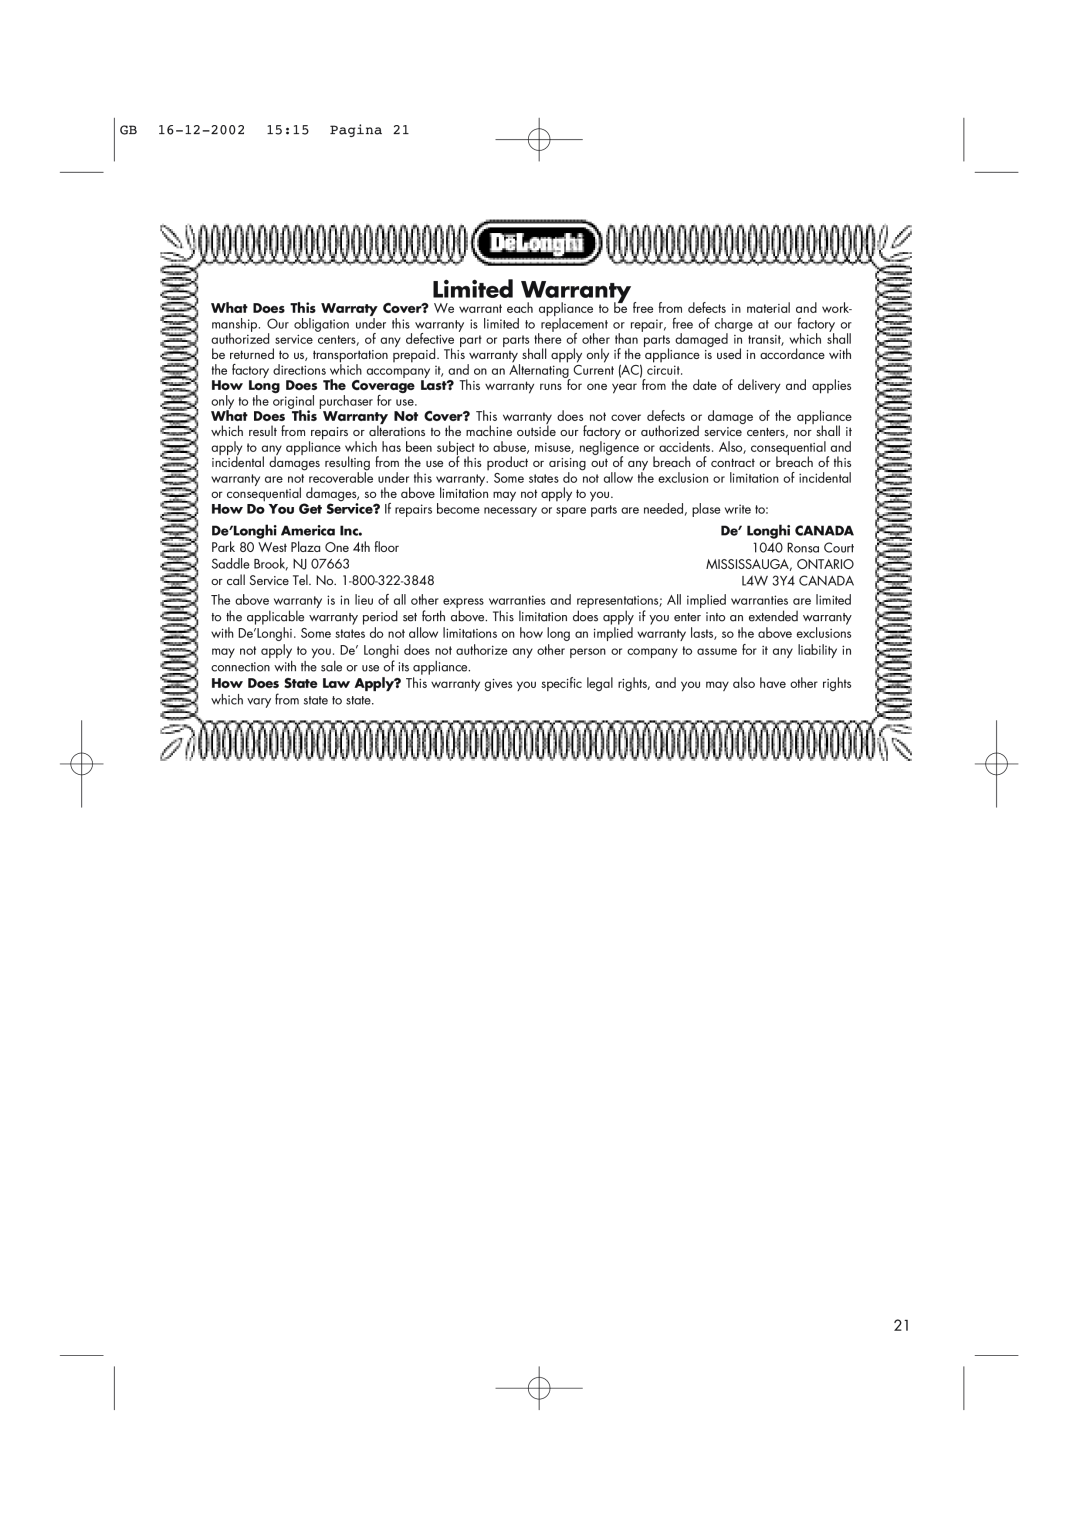 DeLonghi AD1099 manual Limited Warranty, GB 16-12-200215 15 Pagina, De’Longhi America Inc, De’ Longhi CANADA 